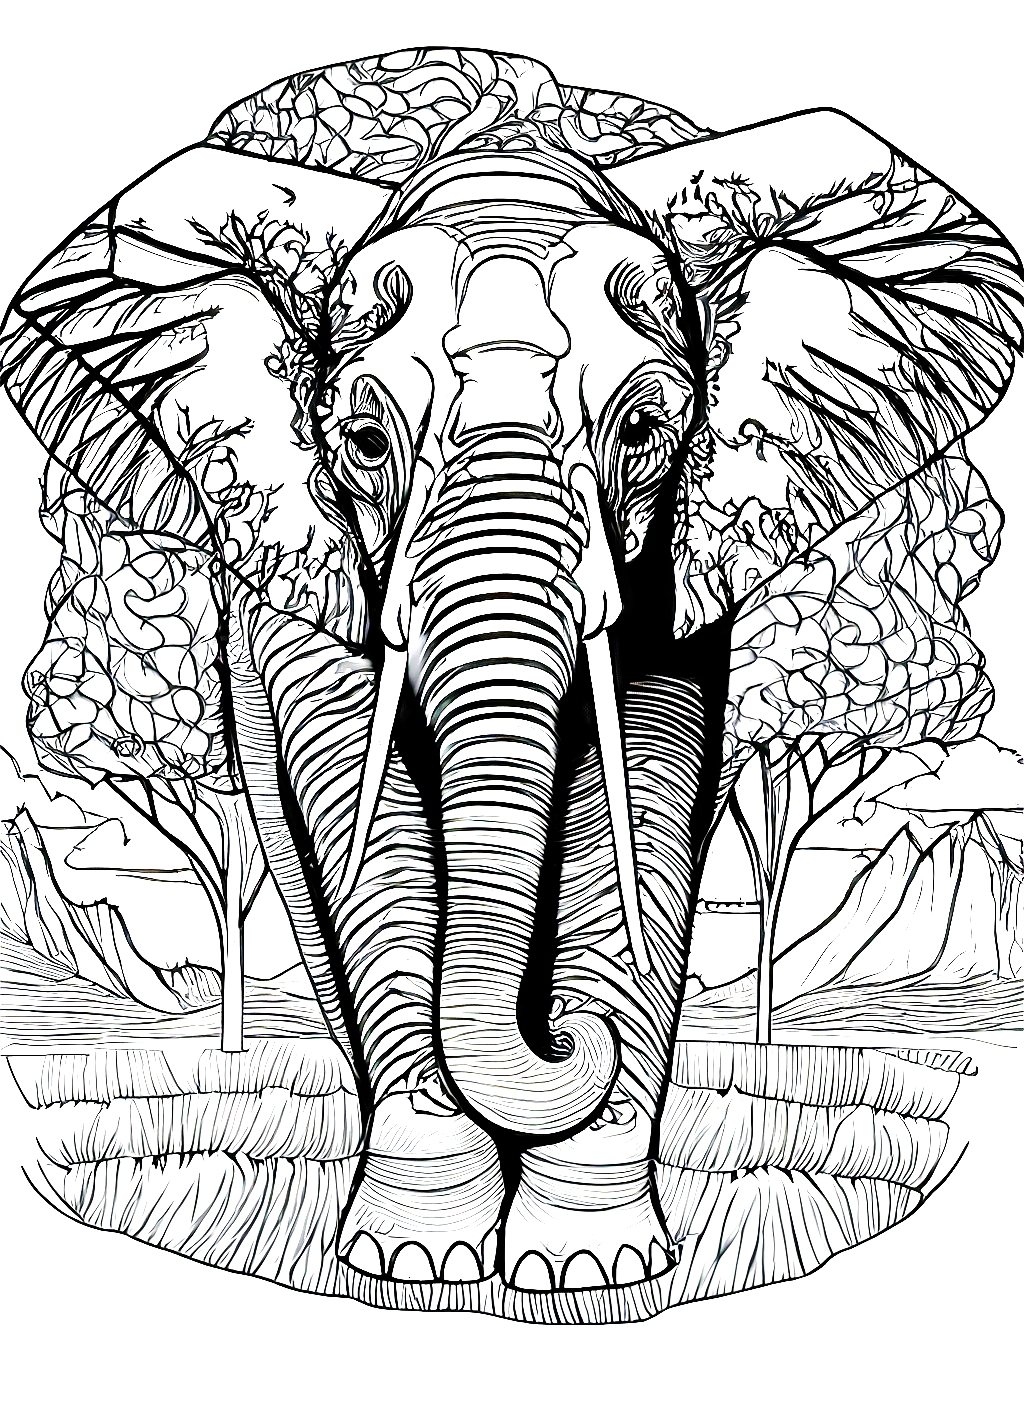 아주 멋지고 복잡한 코끼리 색칠 도안